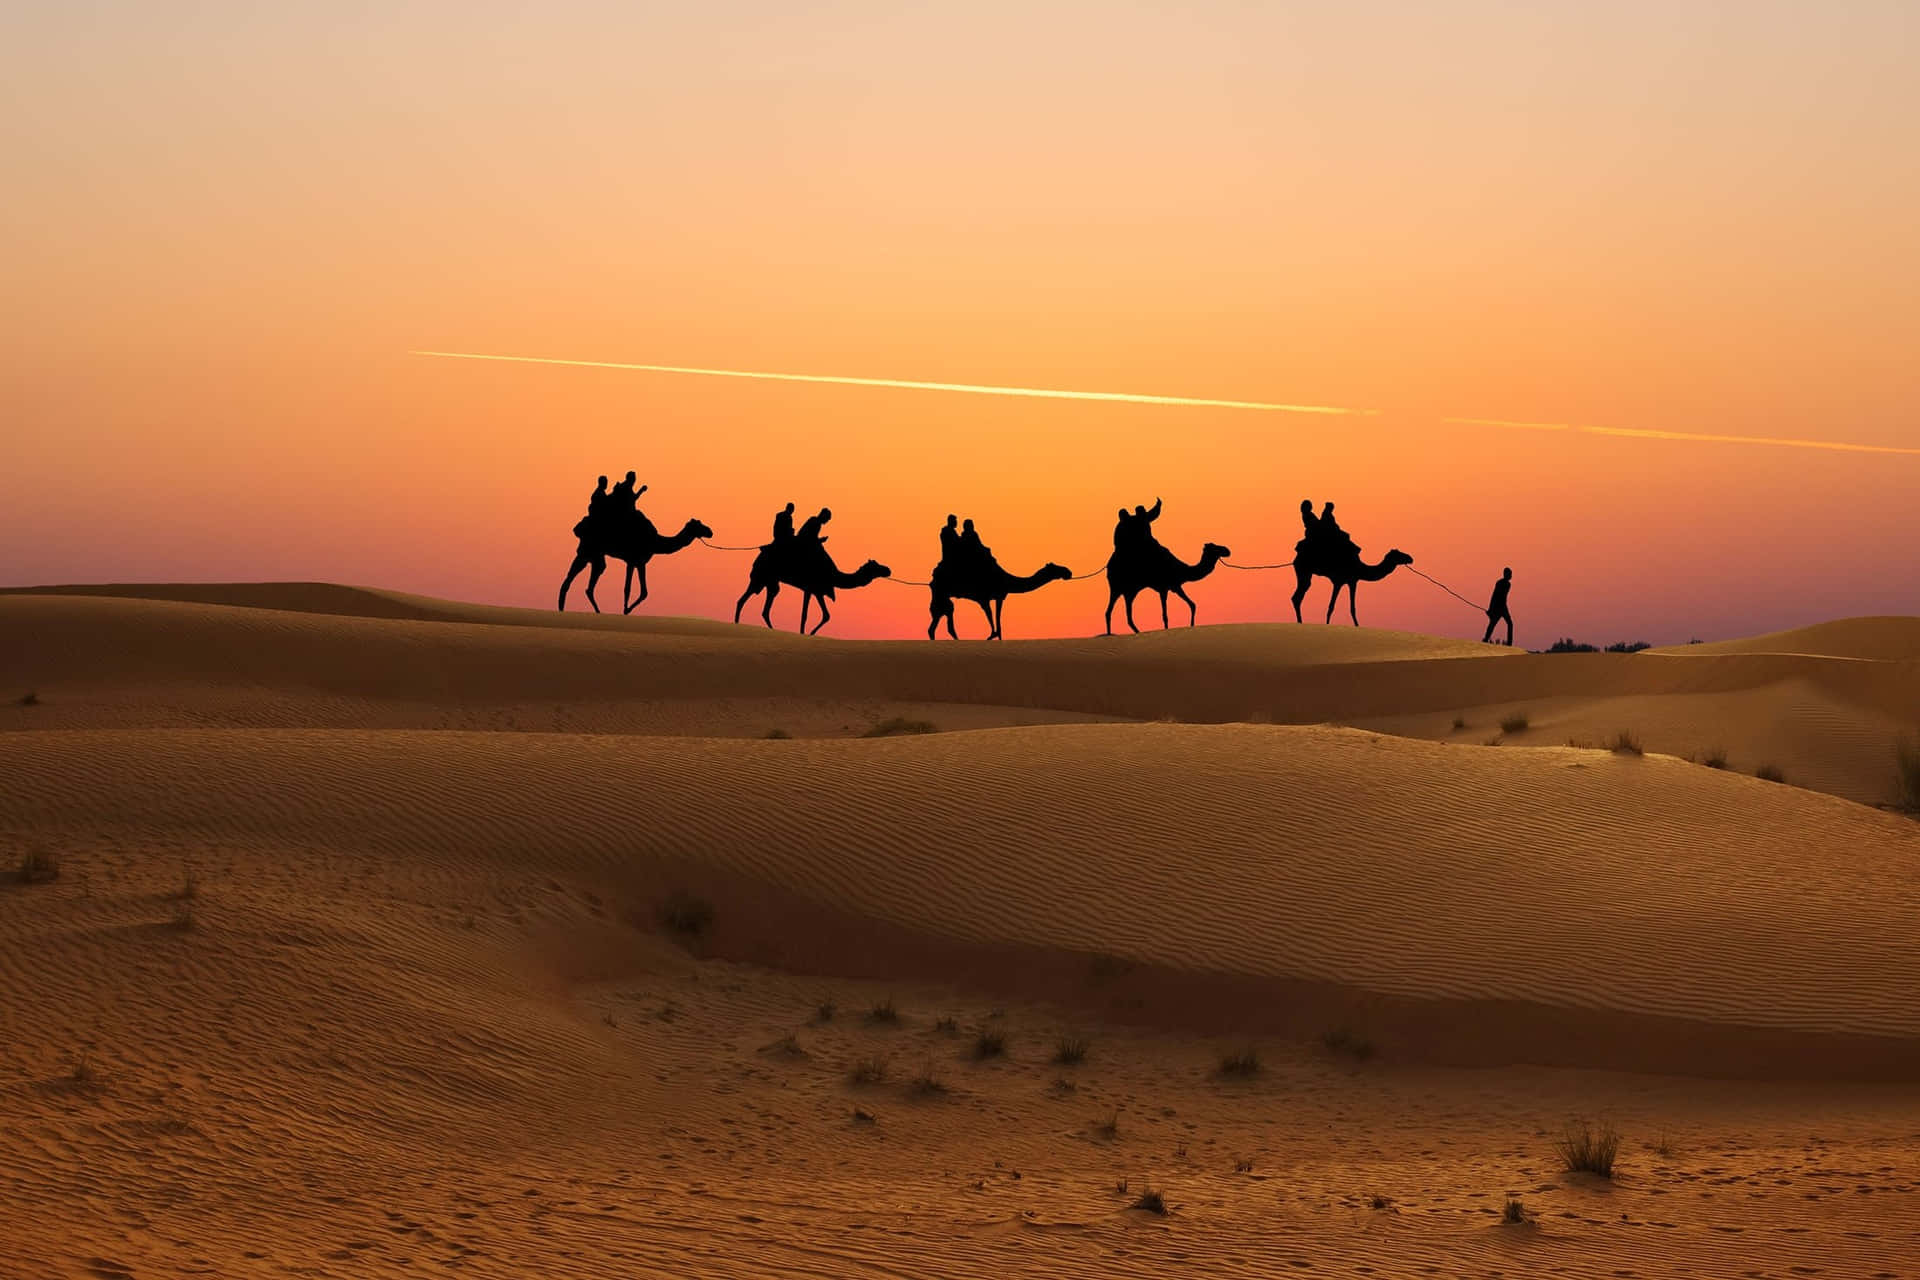 Einegruppe Von Menschen Reitet Auf Kamelen In Der Wüste